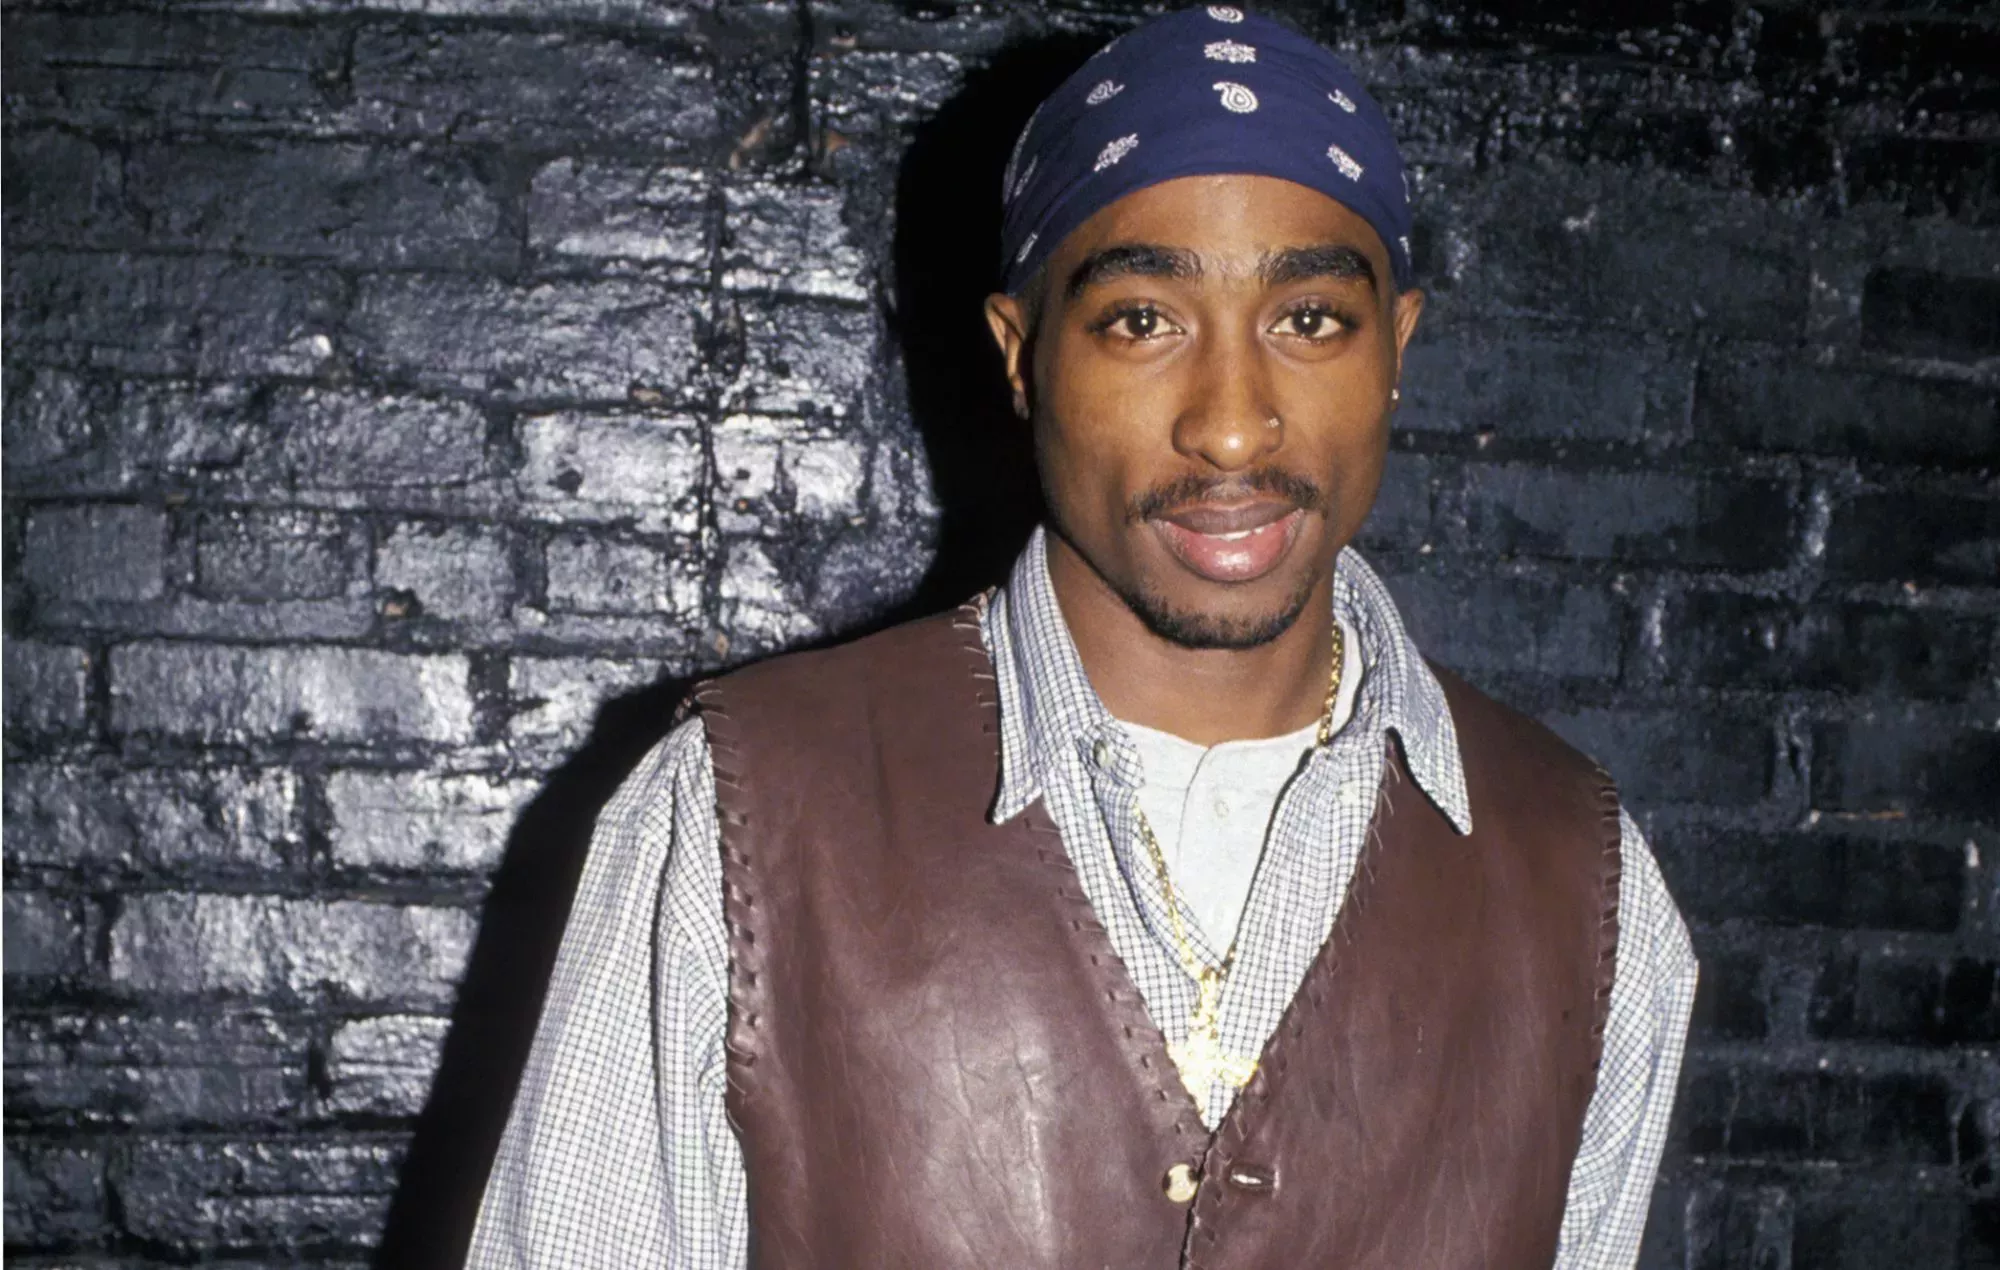 El sospechoso del asesinato de Tupac recuerda la muerte del incidente en unas imágenes reaparecidas